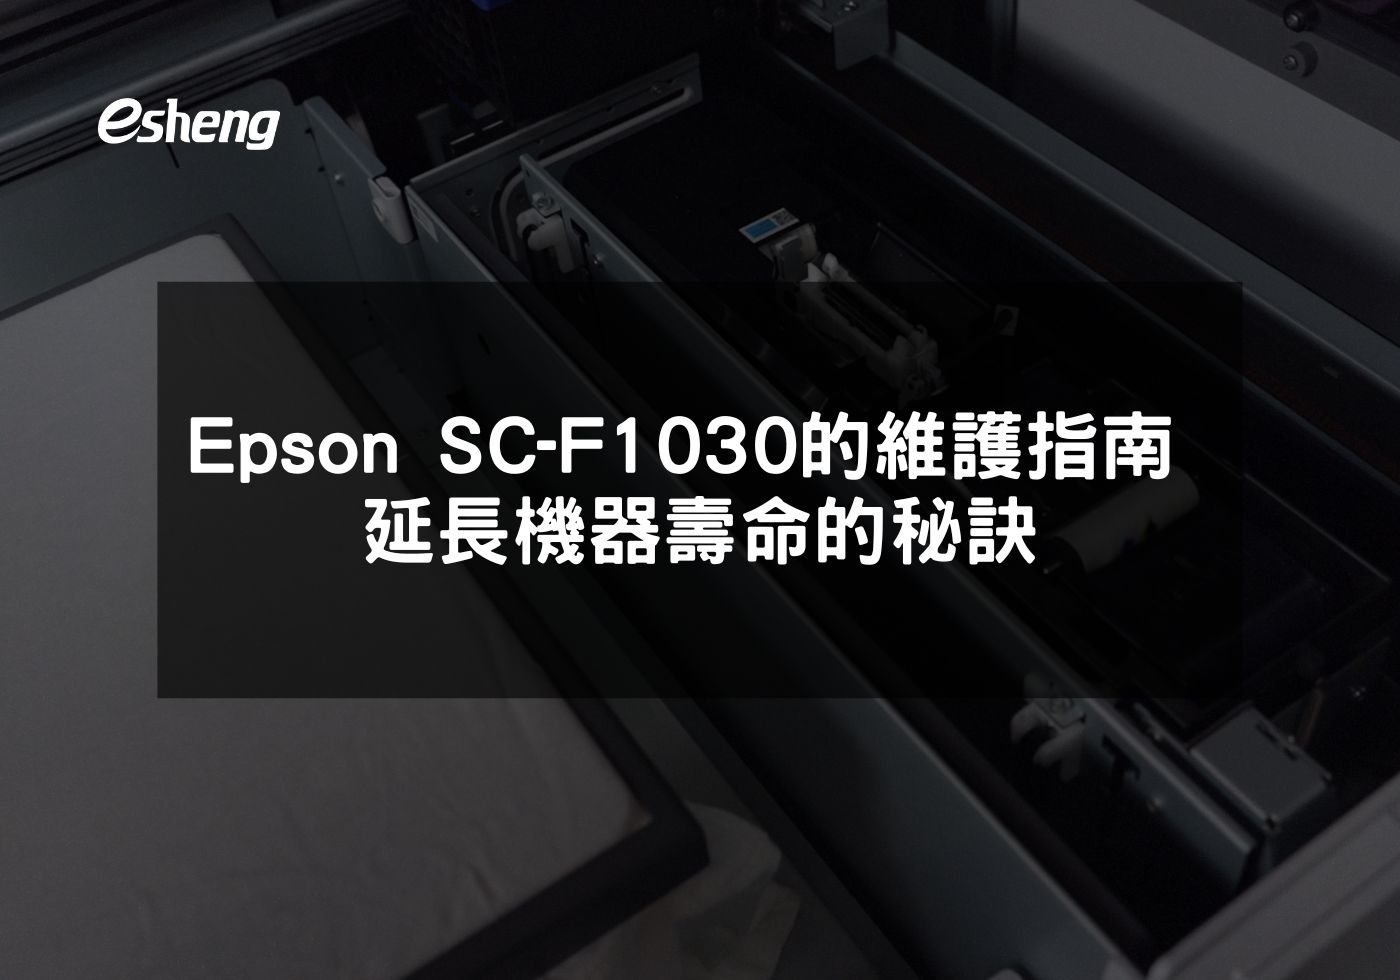 您目前正在查看 Epson SC-F1030的維護指南 延長機器壽命的秘訣